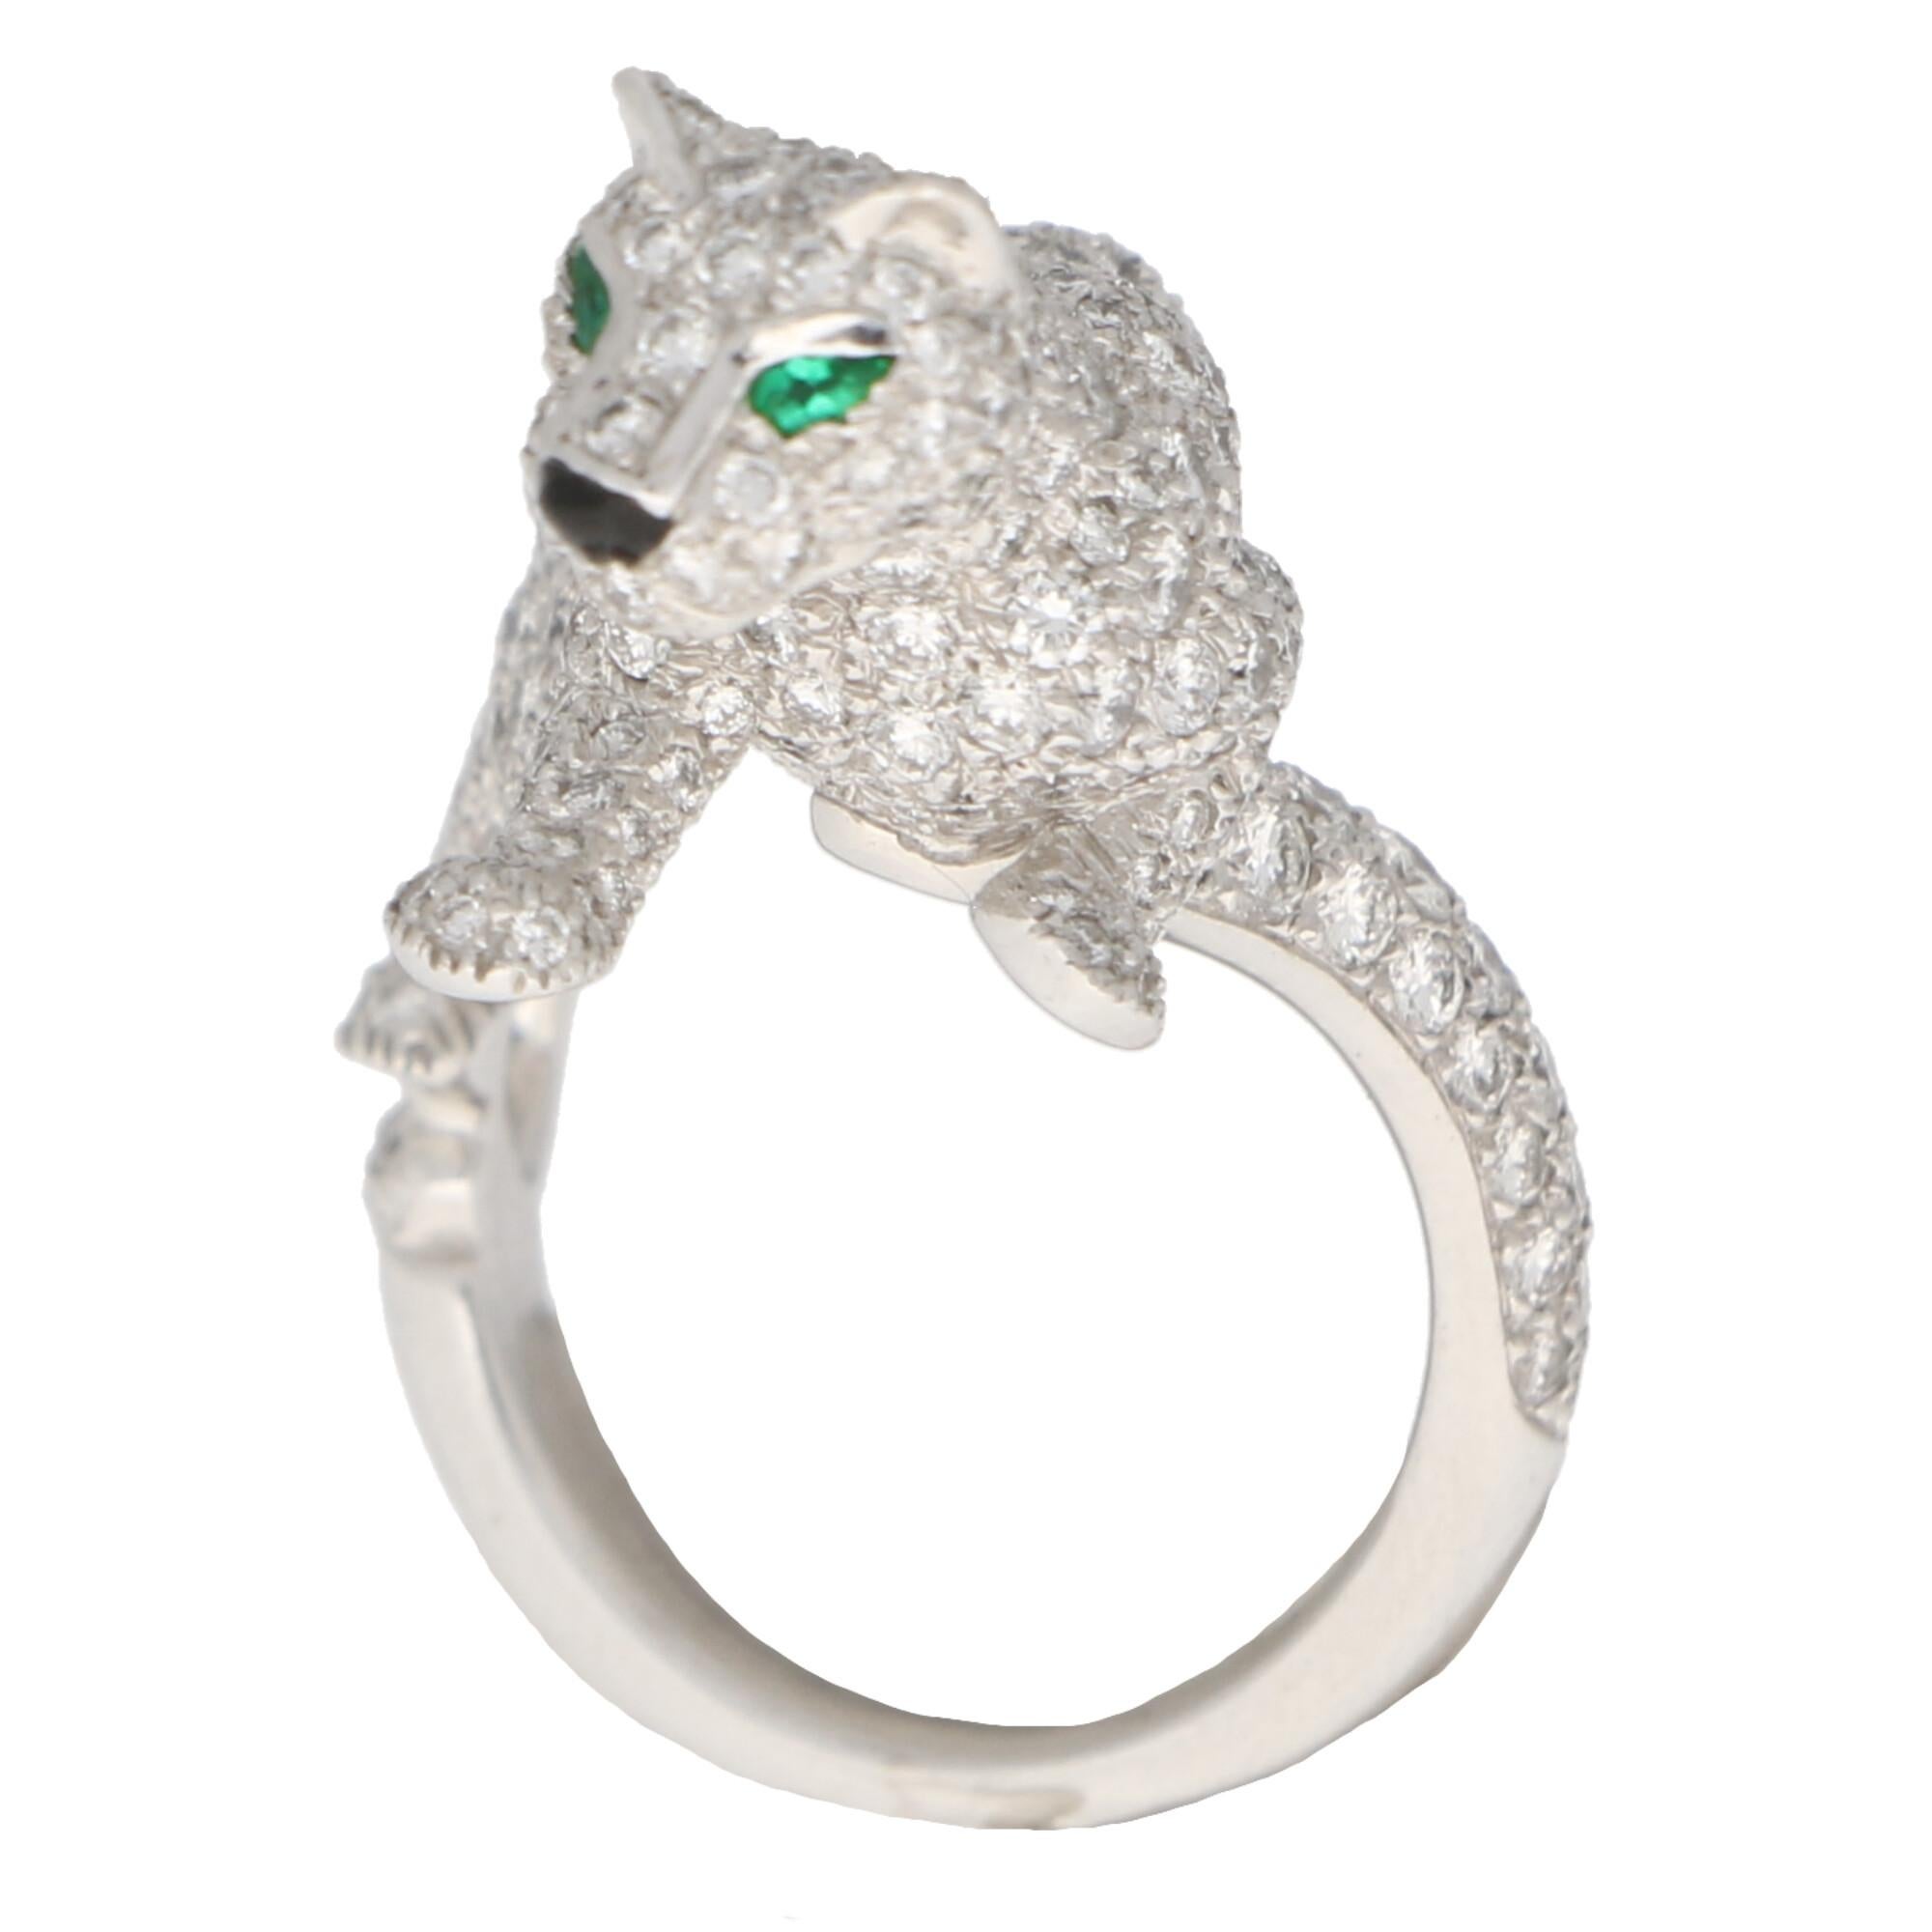 Modern Cartier Diamond and Green Garnet Walking Panther Ring Set in 18k White Gold